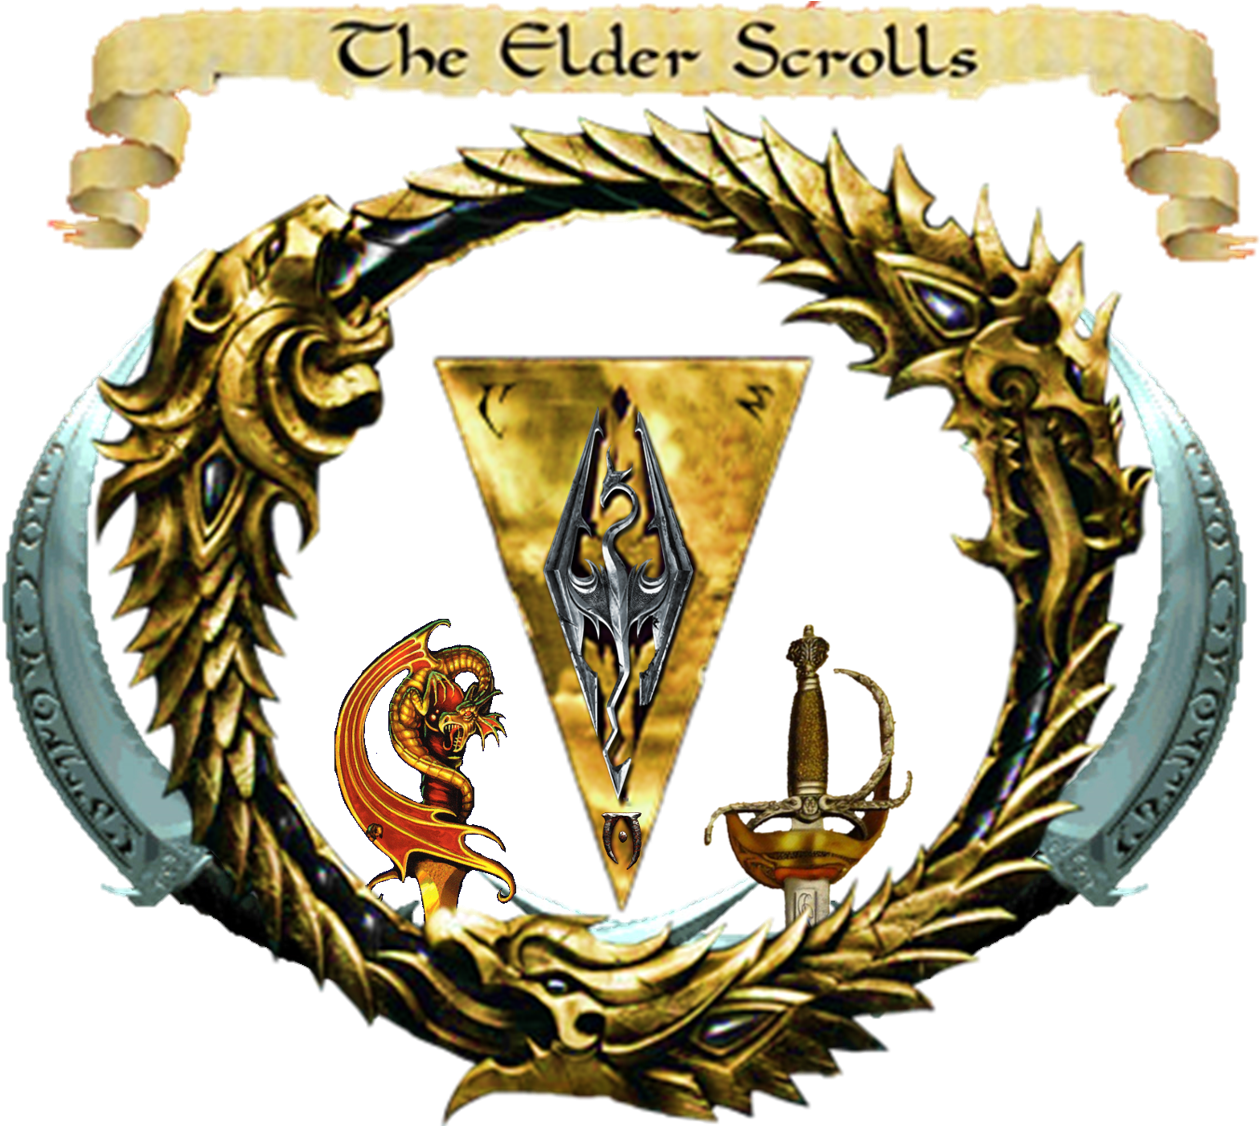 The Ultimate Elder Scrolls Logo - Elder Scrolls Online (1540x1125)